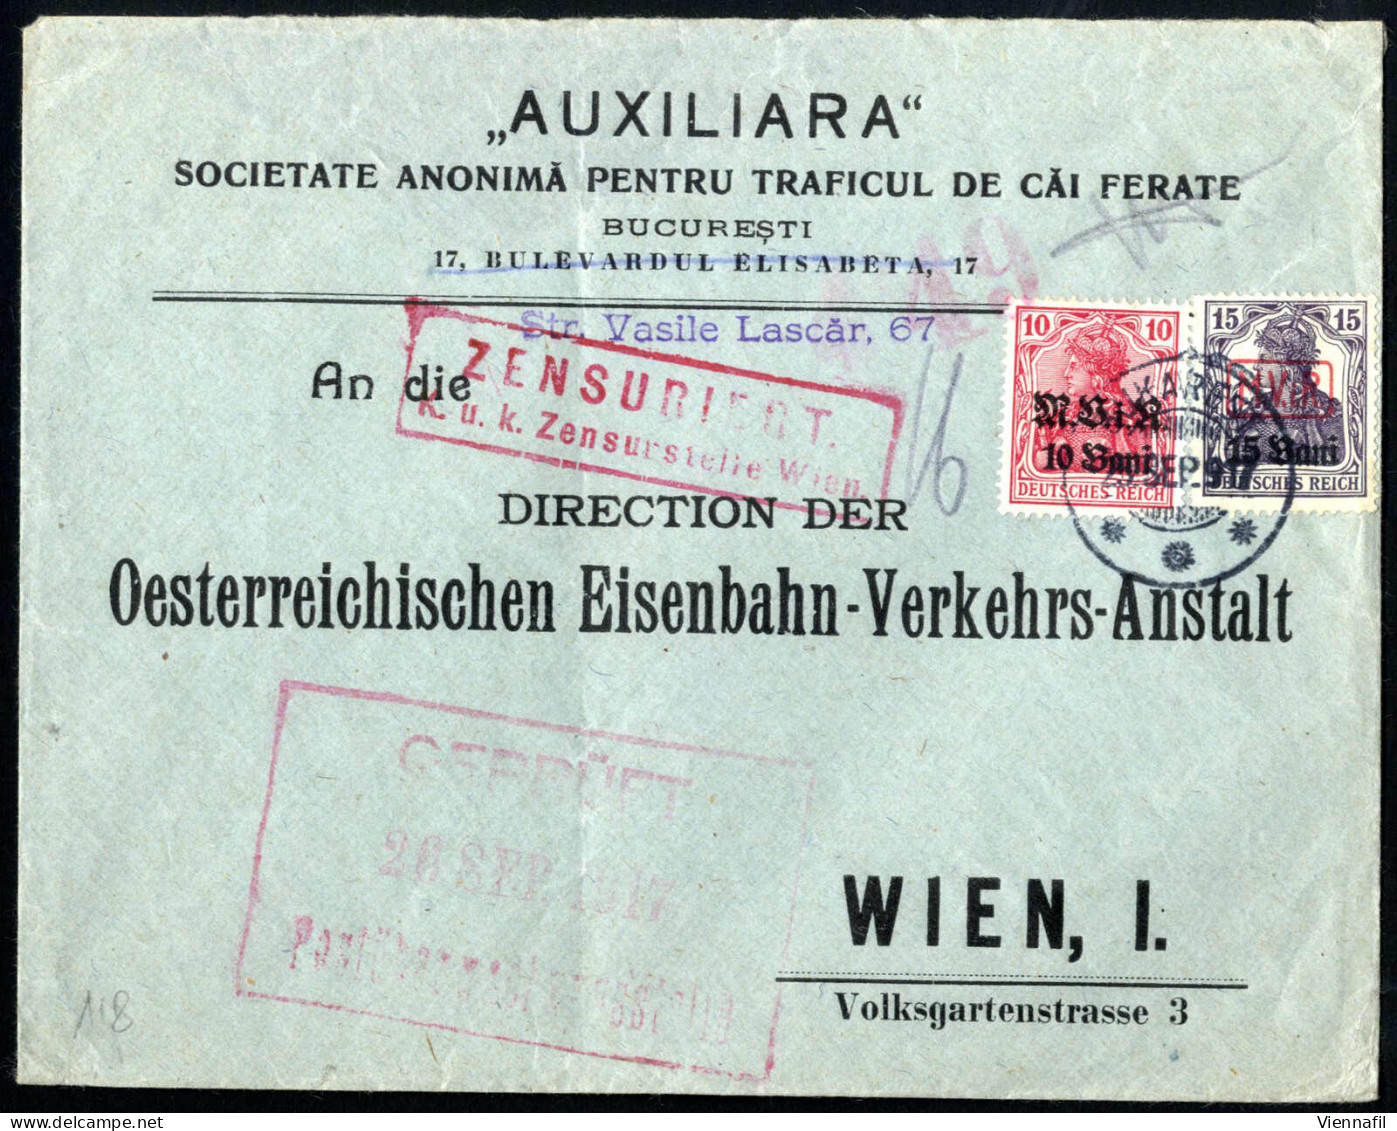 cover Tschechoslowakei 1918/55 ca., Lot mit hunderten Belegen/Ganzsachen mit interessanten Frankaturen und Sonderstempel